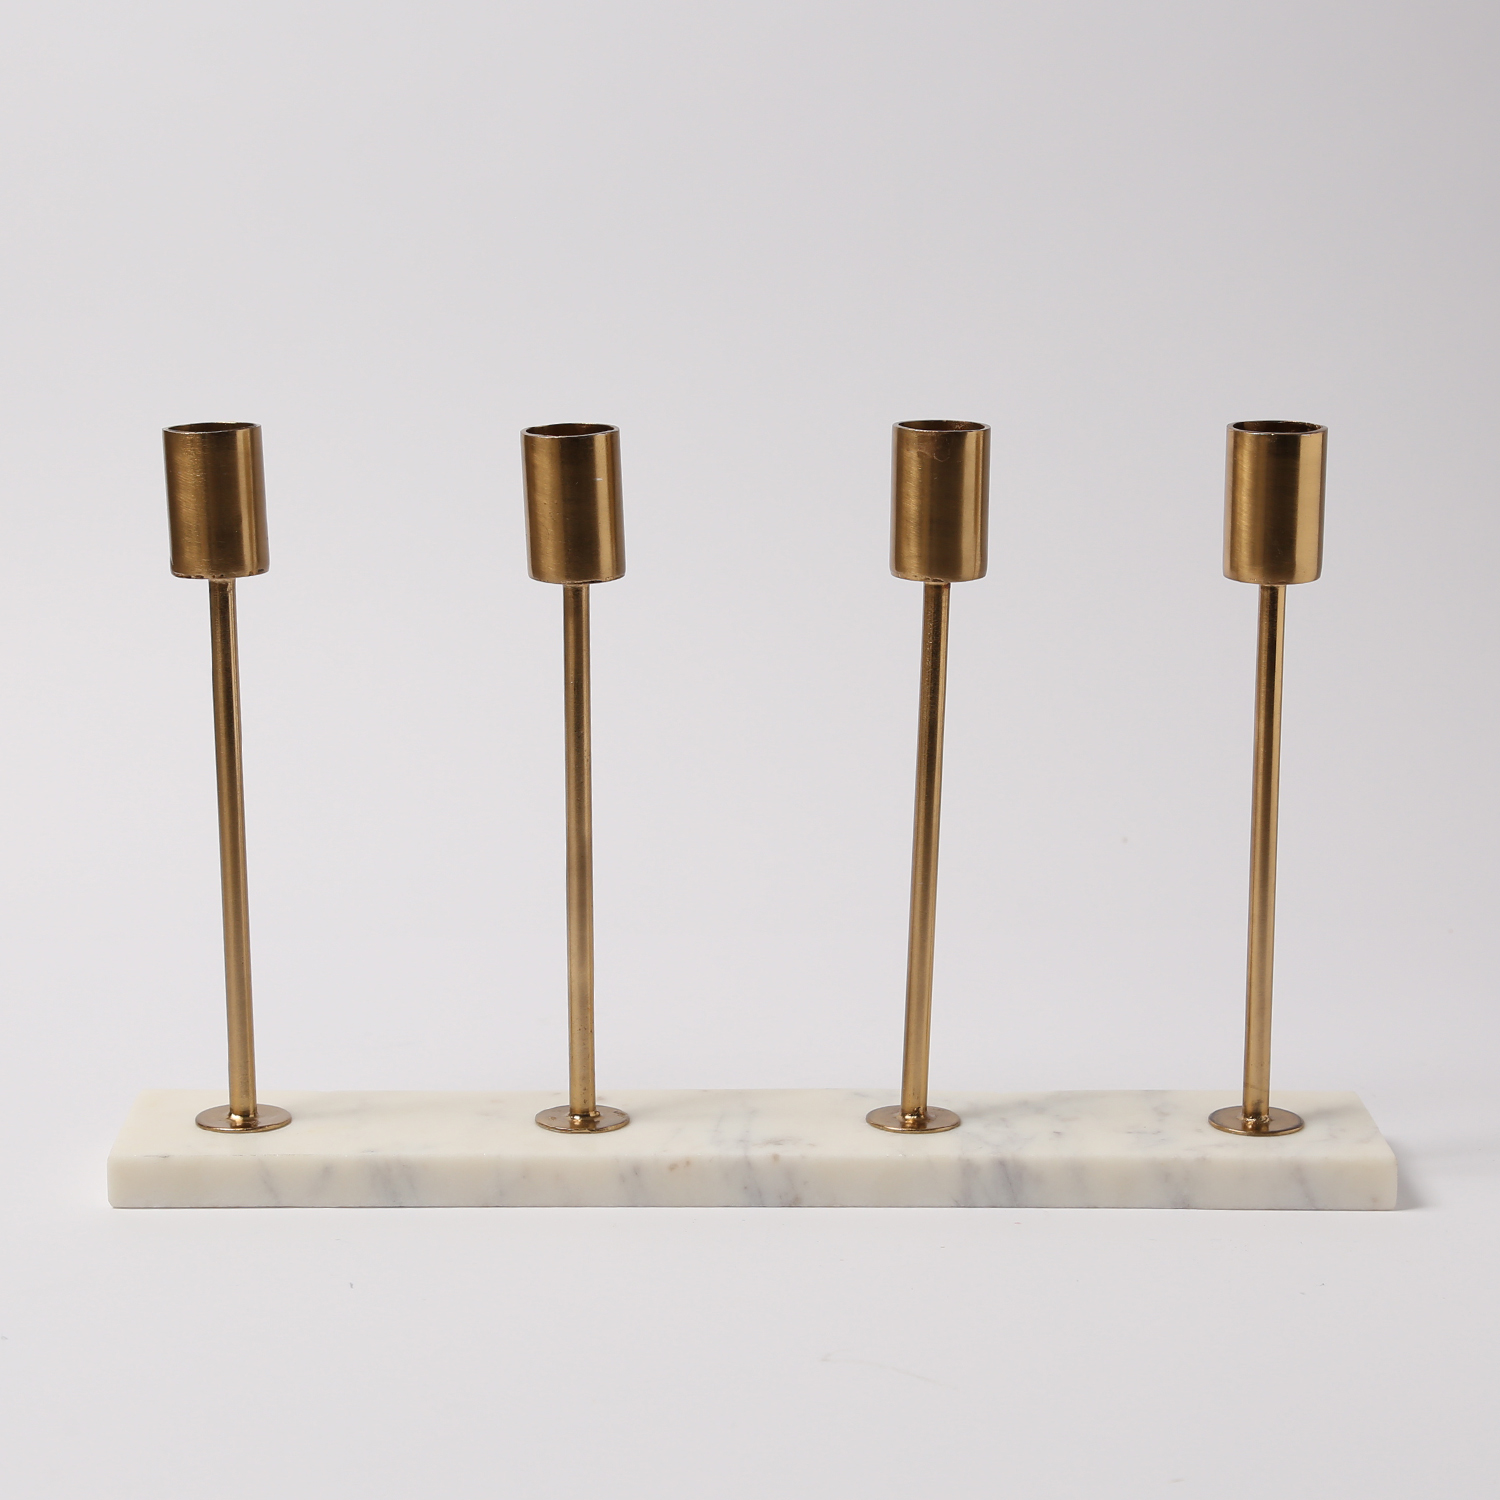 Stabkerzenhalter - Mamoroptik - Metall - 4 goldfarbene Kerzenhalterungen - H: 20cm - weiß